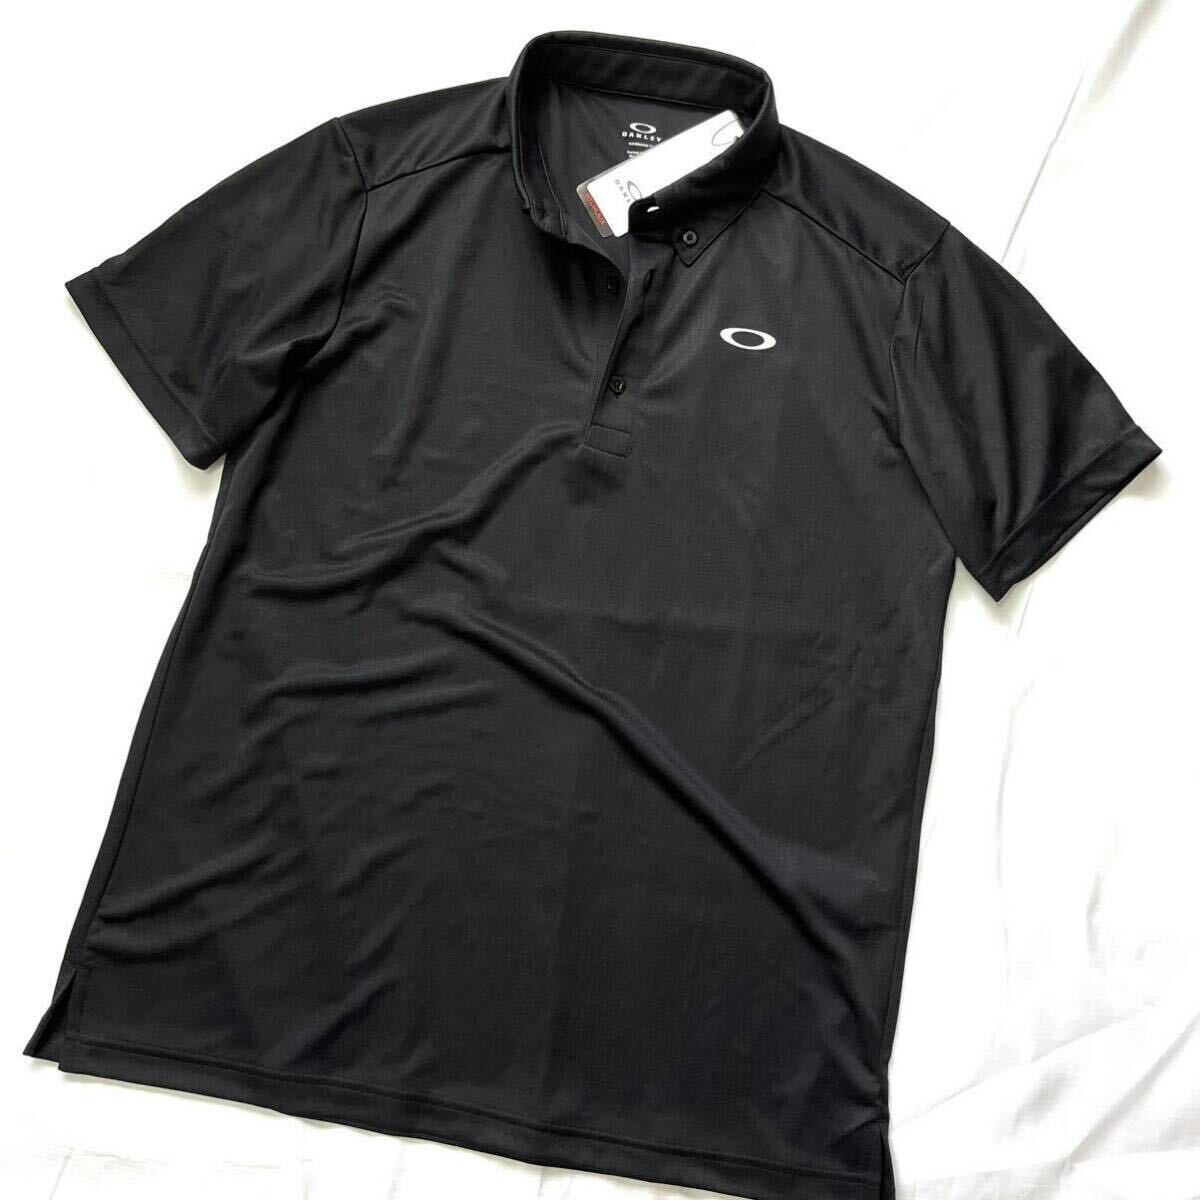 #C068 новый товар [ Япония L размер ] чёрный утка общий рисунок камуфляж серия Golf новый товар Oacley HYDROLIX кнопка down рубашка-поло короткий рукав . пот скорость . общий рисунок OAKLEY